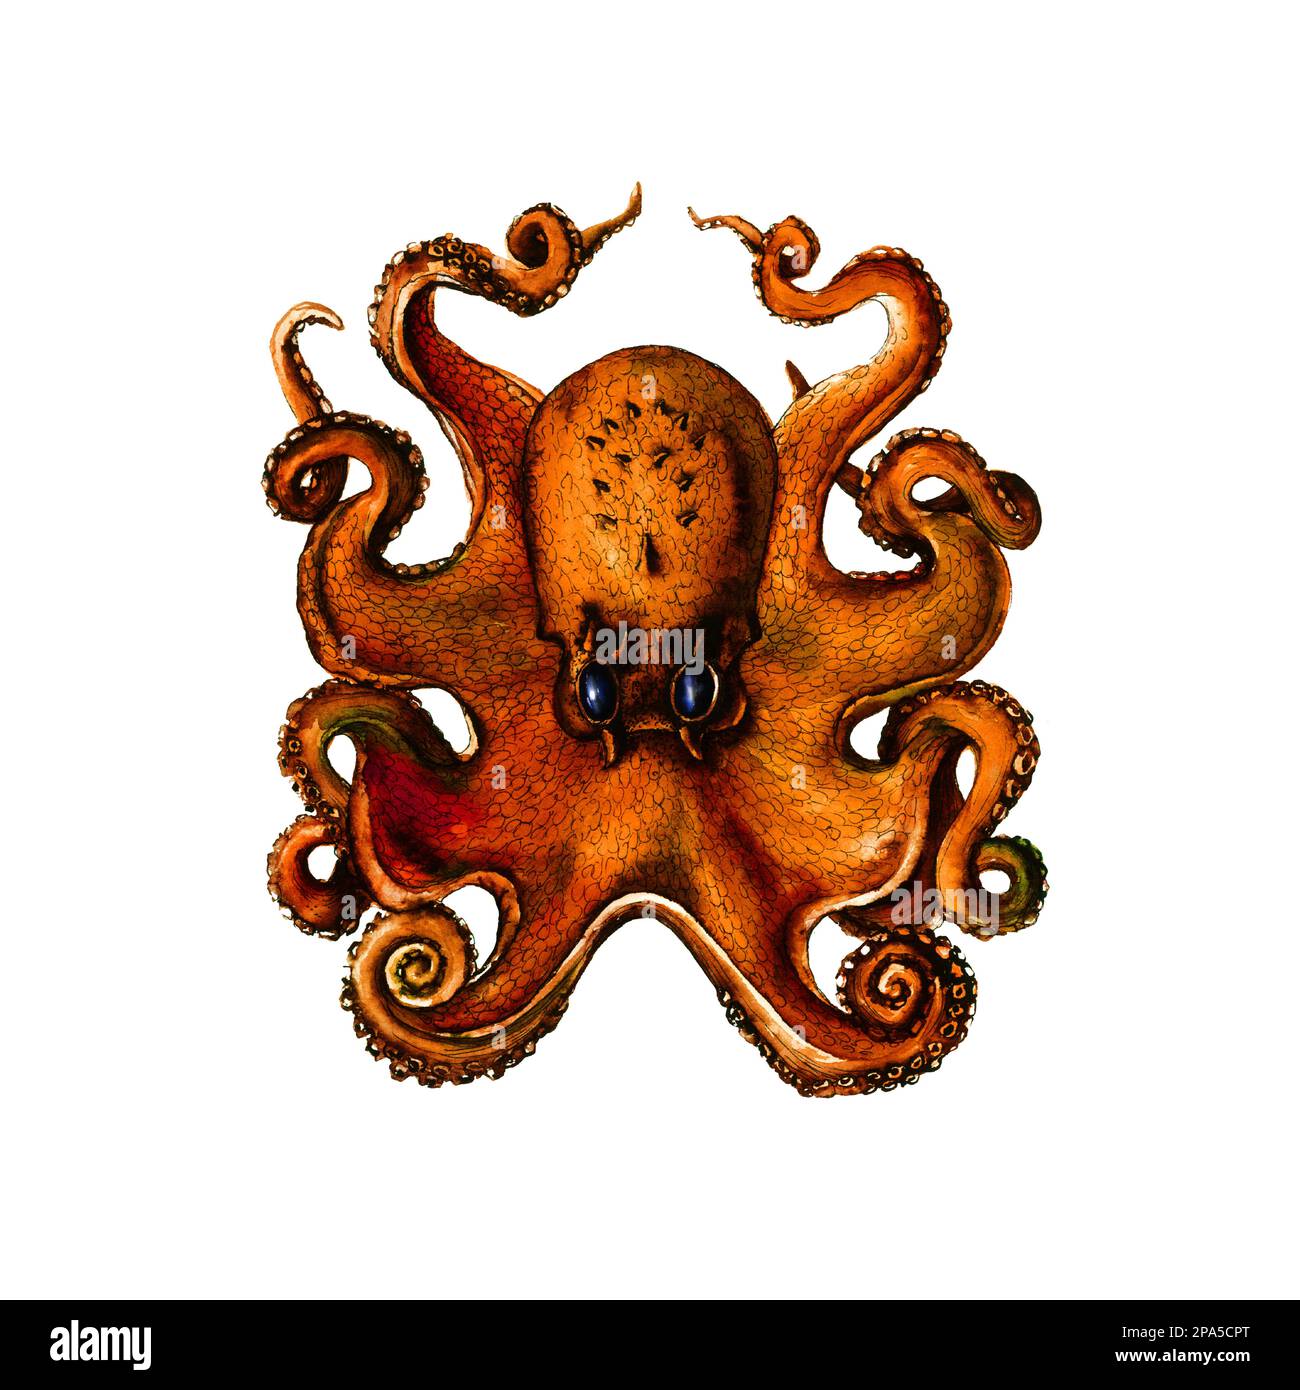 Octopus réaliste illustration botanique sur fond blanc. Œuvres d'art pour tatouage, impression, tissus, textiles, fabrication, fonds d'écran. Banque D'Images